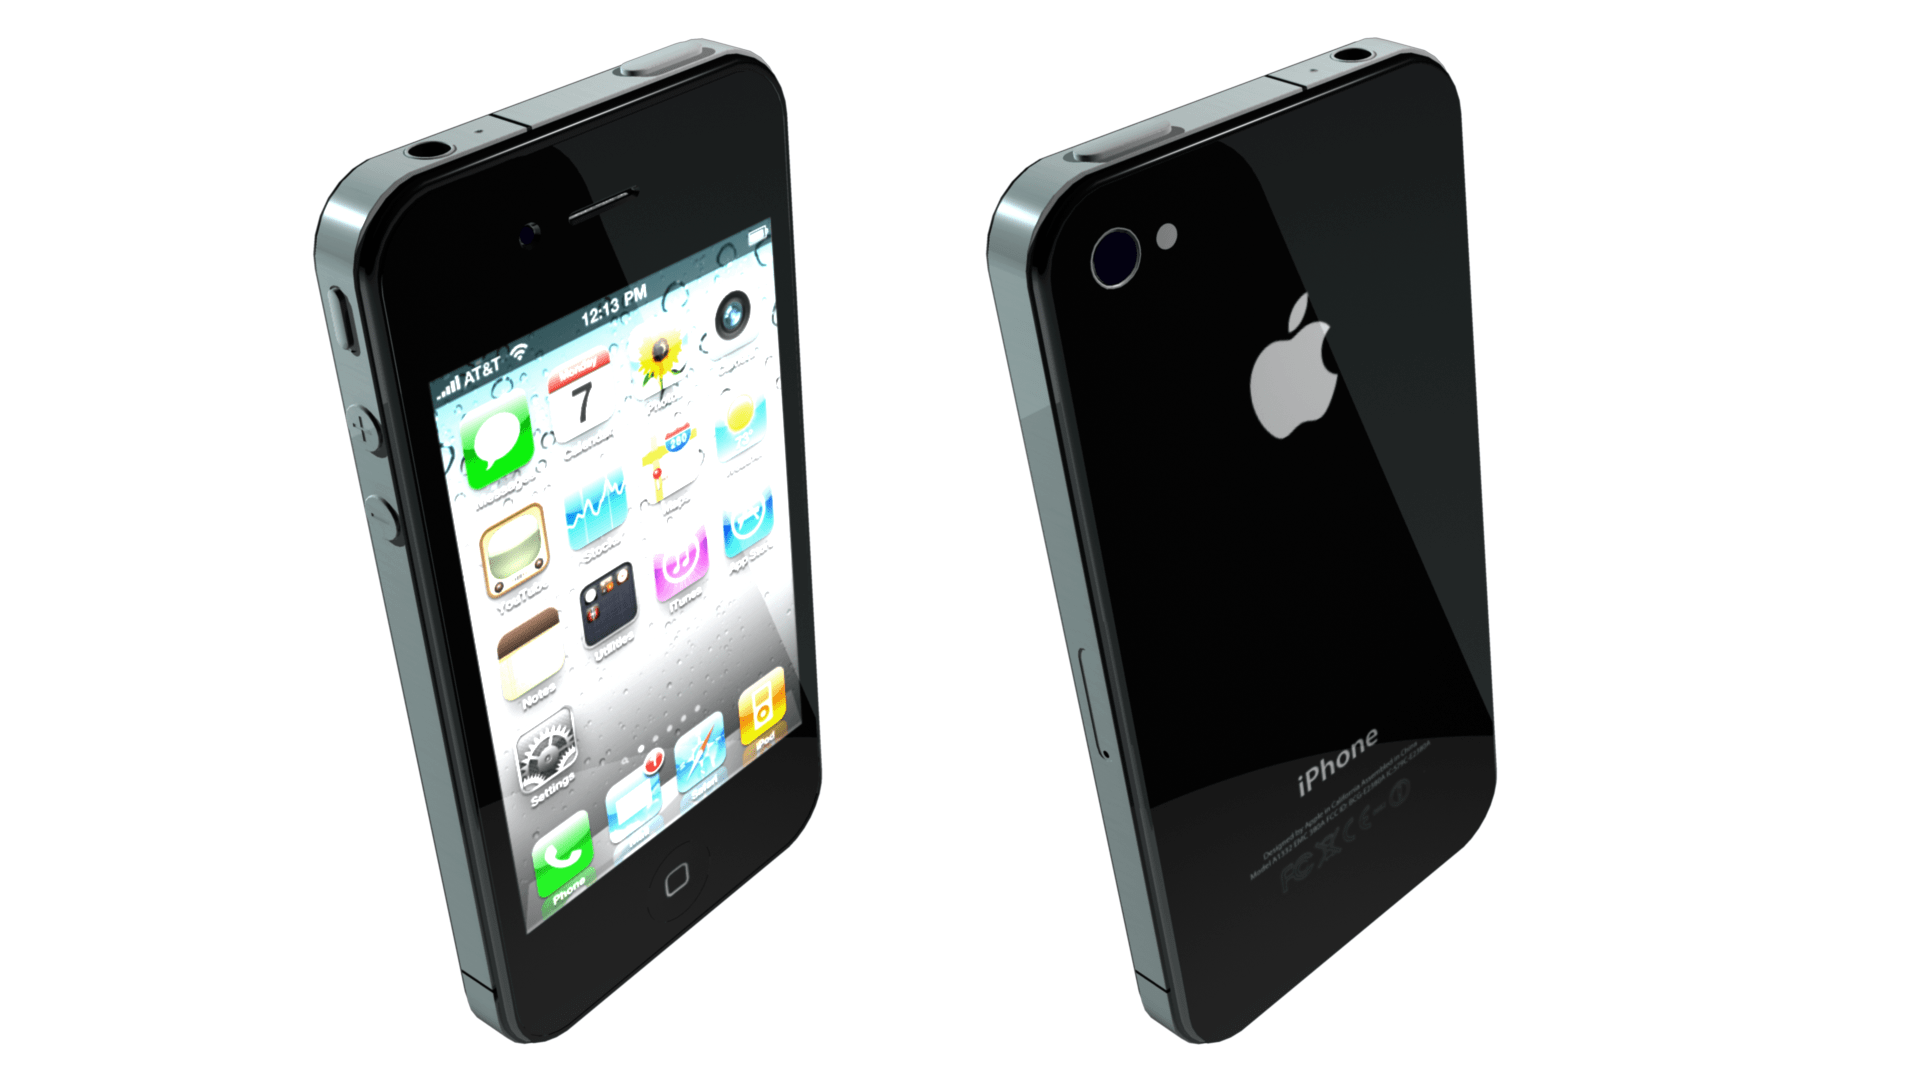 Картинки айфона 4. Iphone 4s. Iphone 4 и 4s. Apple iphone 4s. Iphone 4 2010.